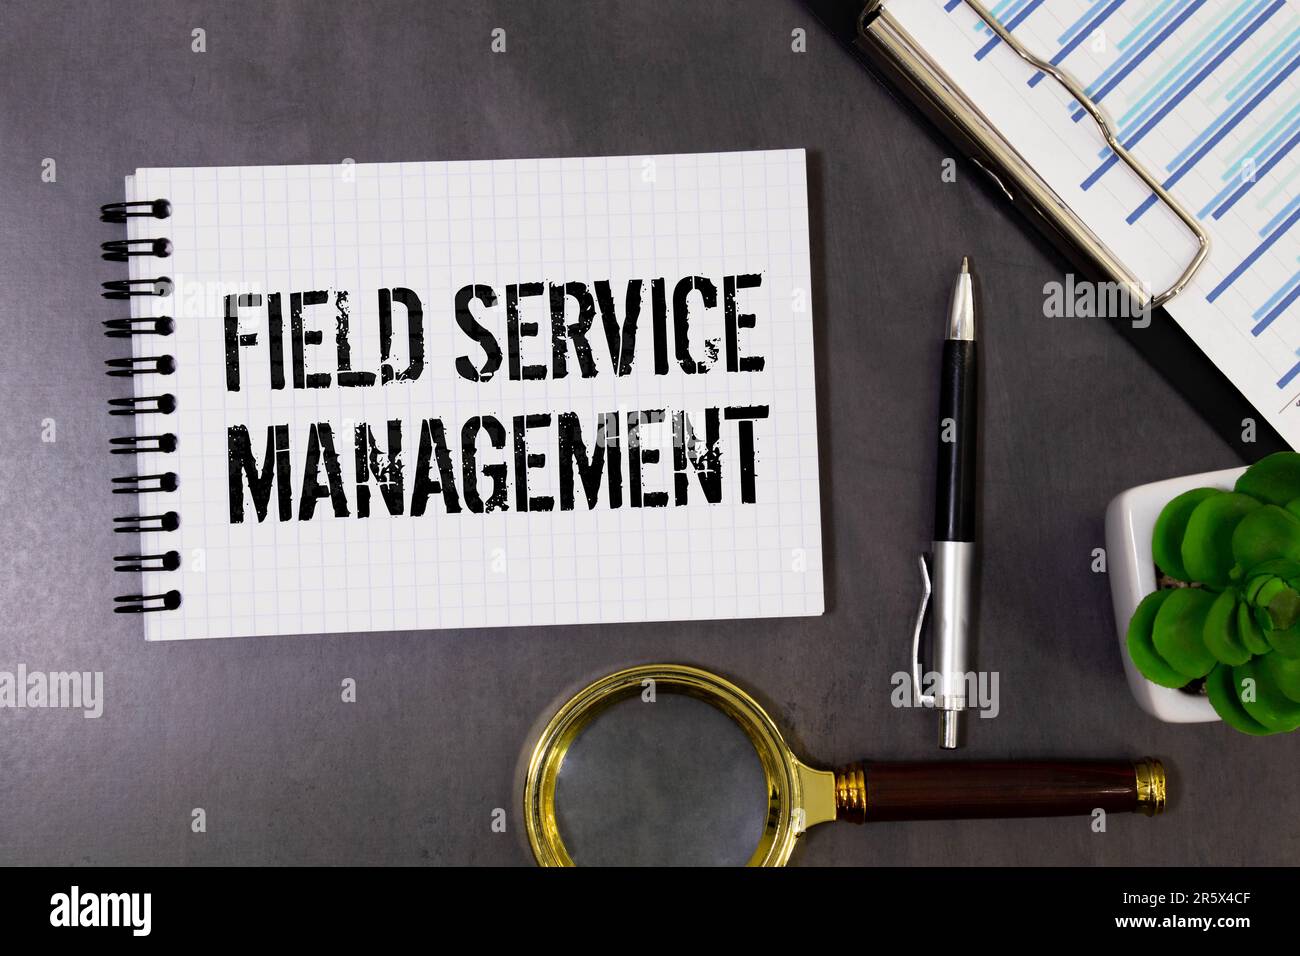 Field Service Management-Wörter in einem Office-Notizbuch Stockfoto